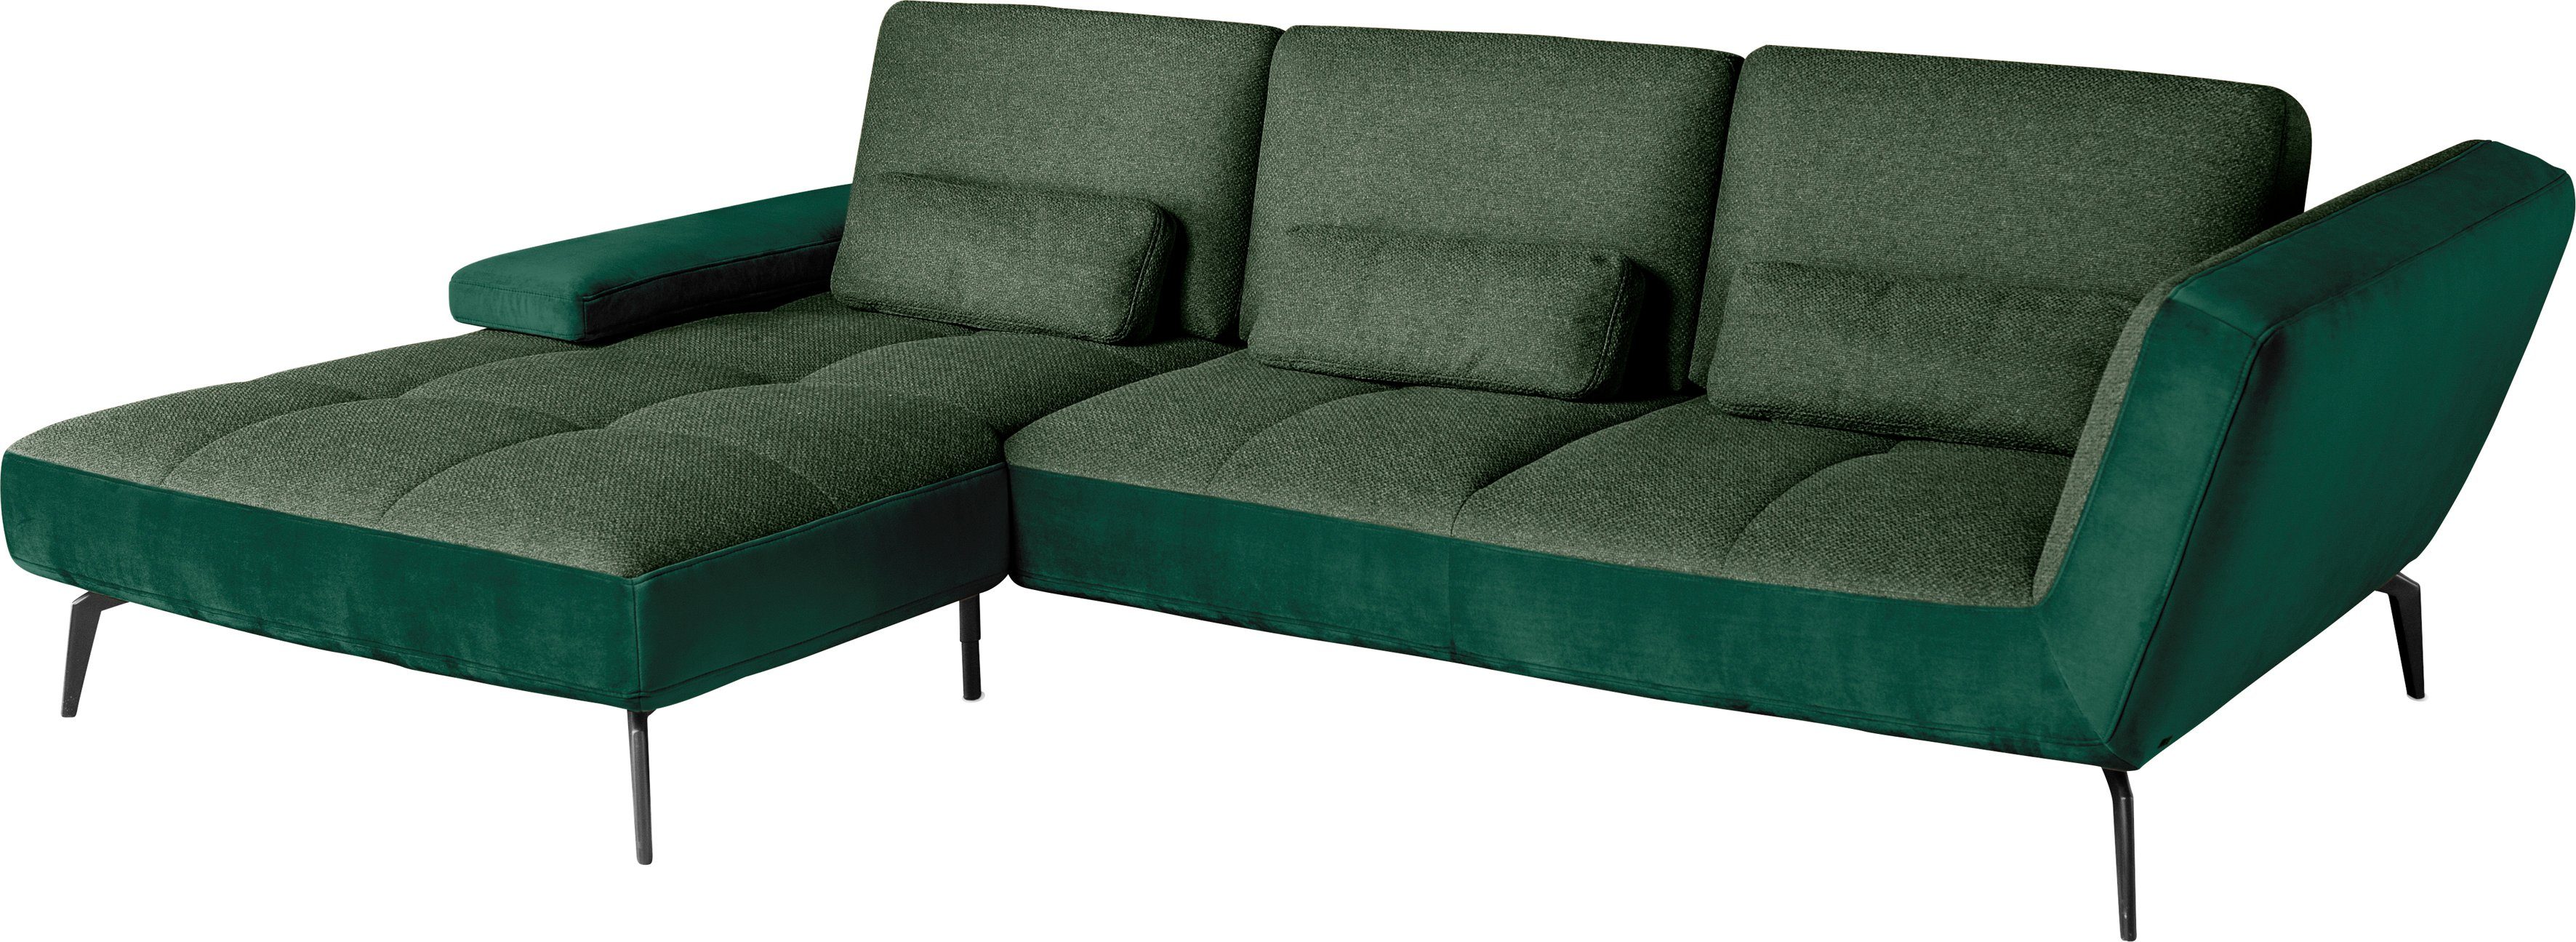 Sitztiefenverstellung by dunkelgrün162/dunkelgrün38 inklusive Nierenkissen SO one und Musterring 4300, Ecksofa set